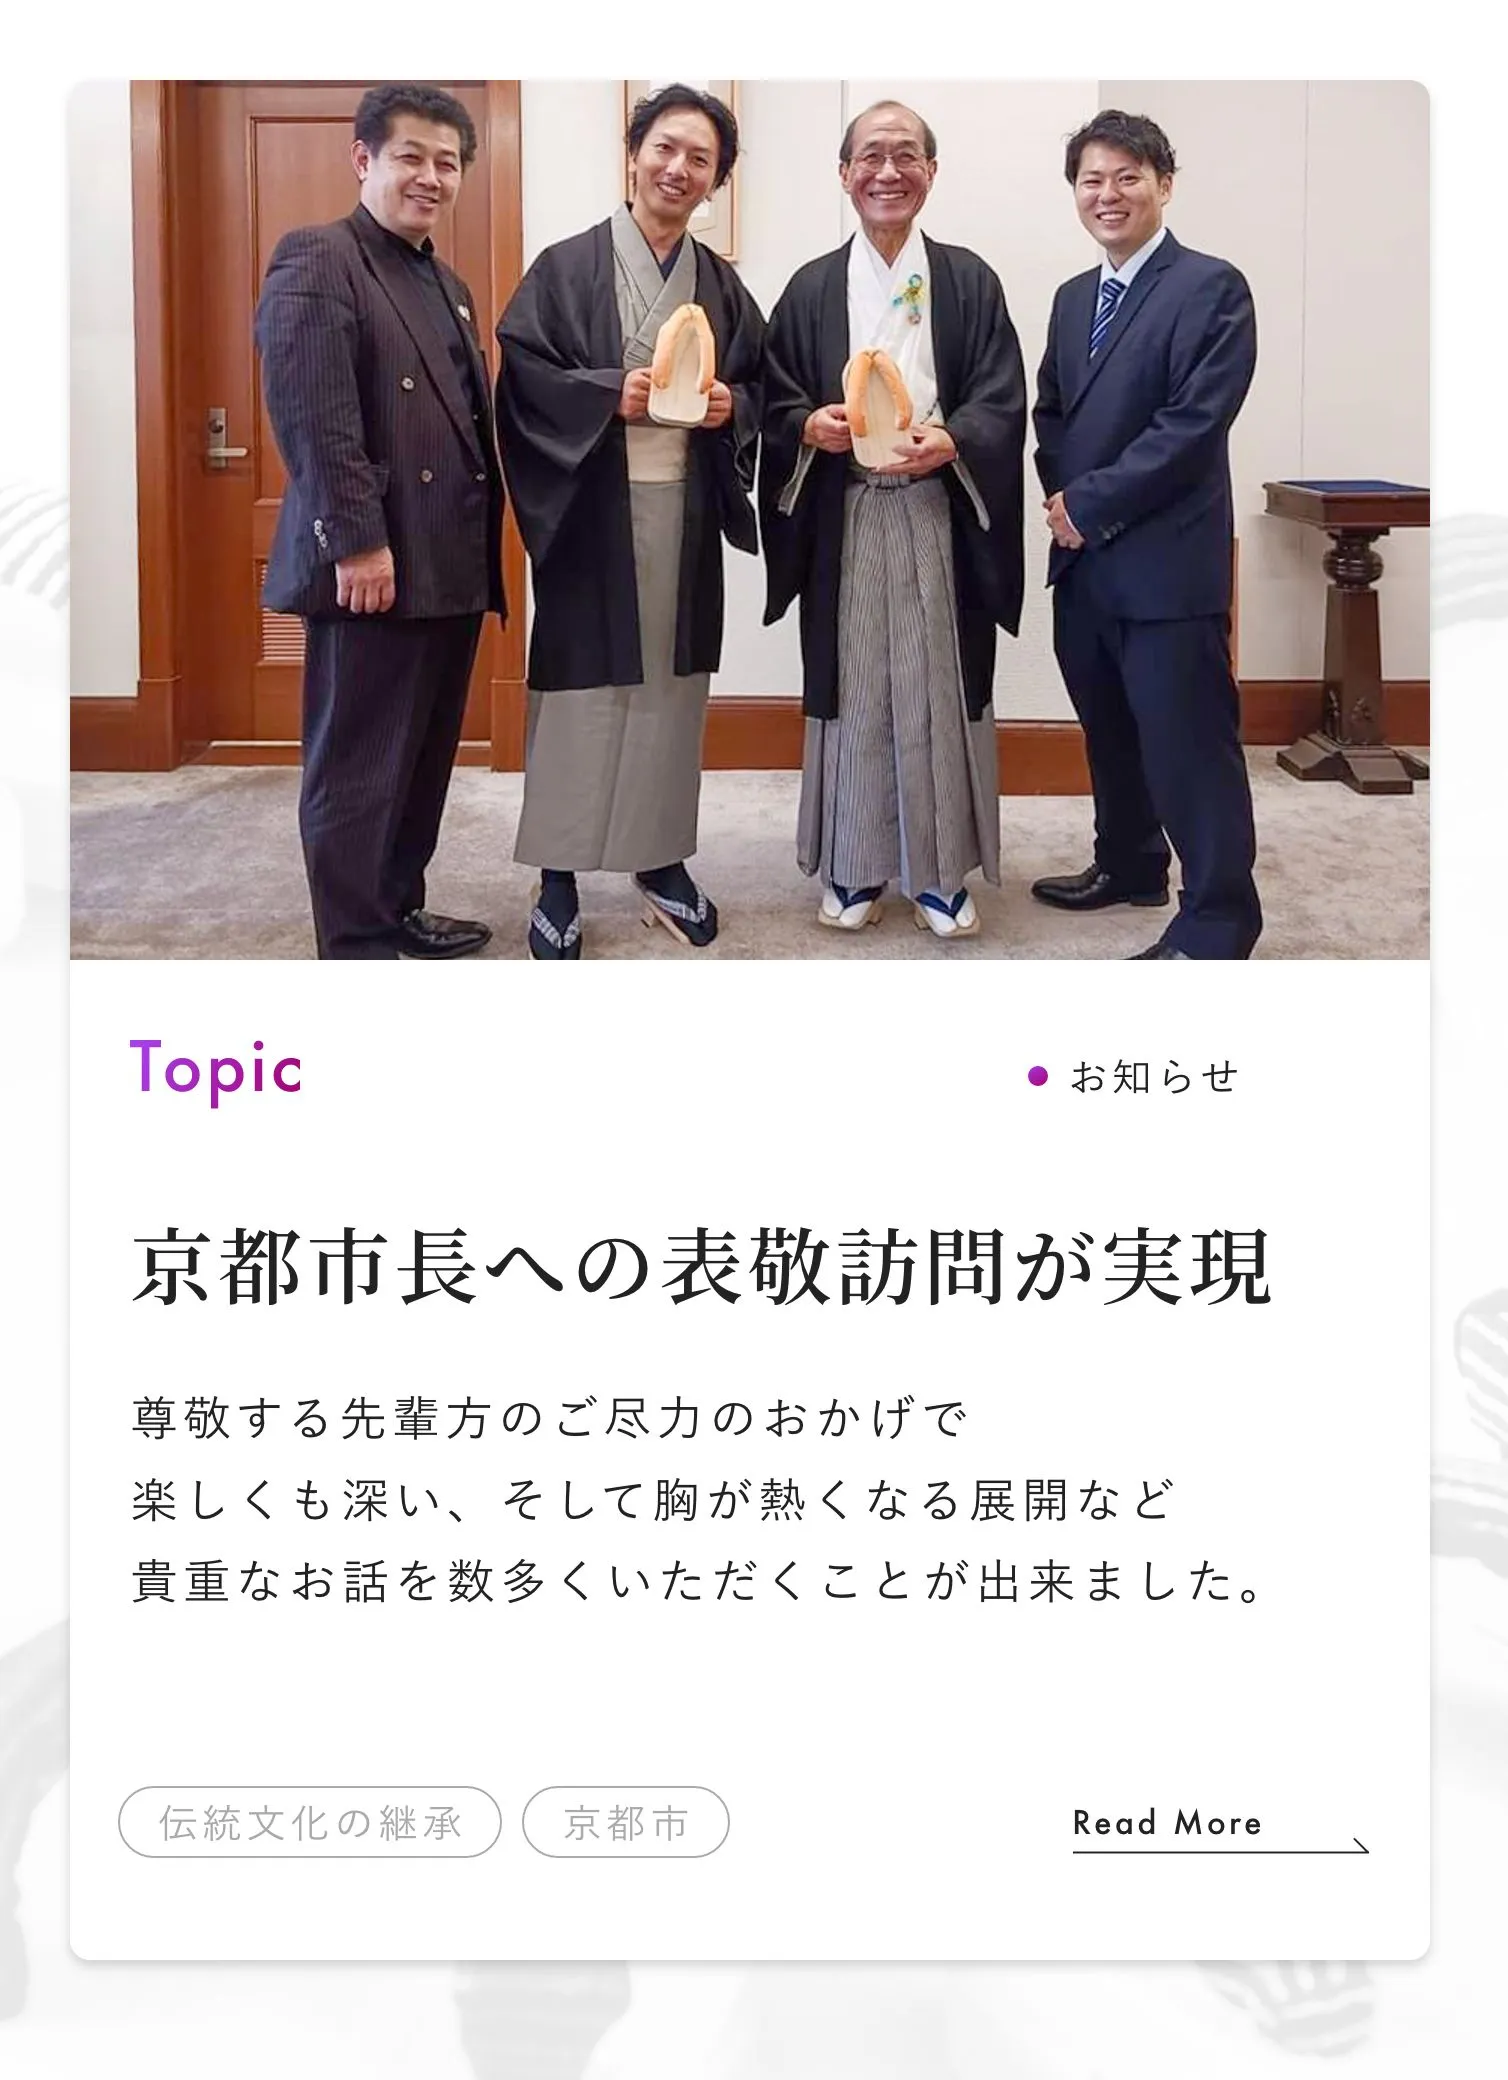 京都市長への
				表敬訪問が実現